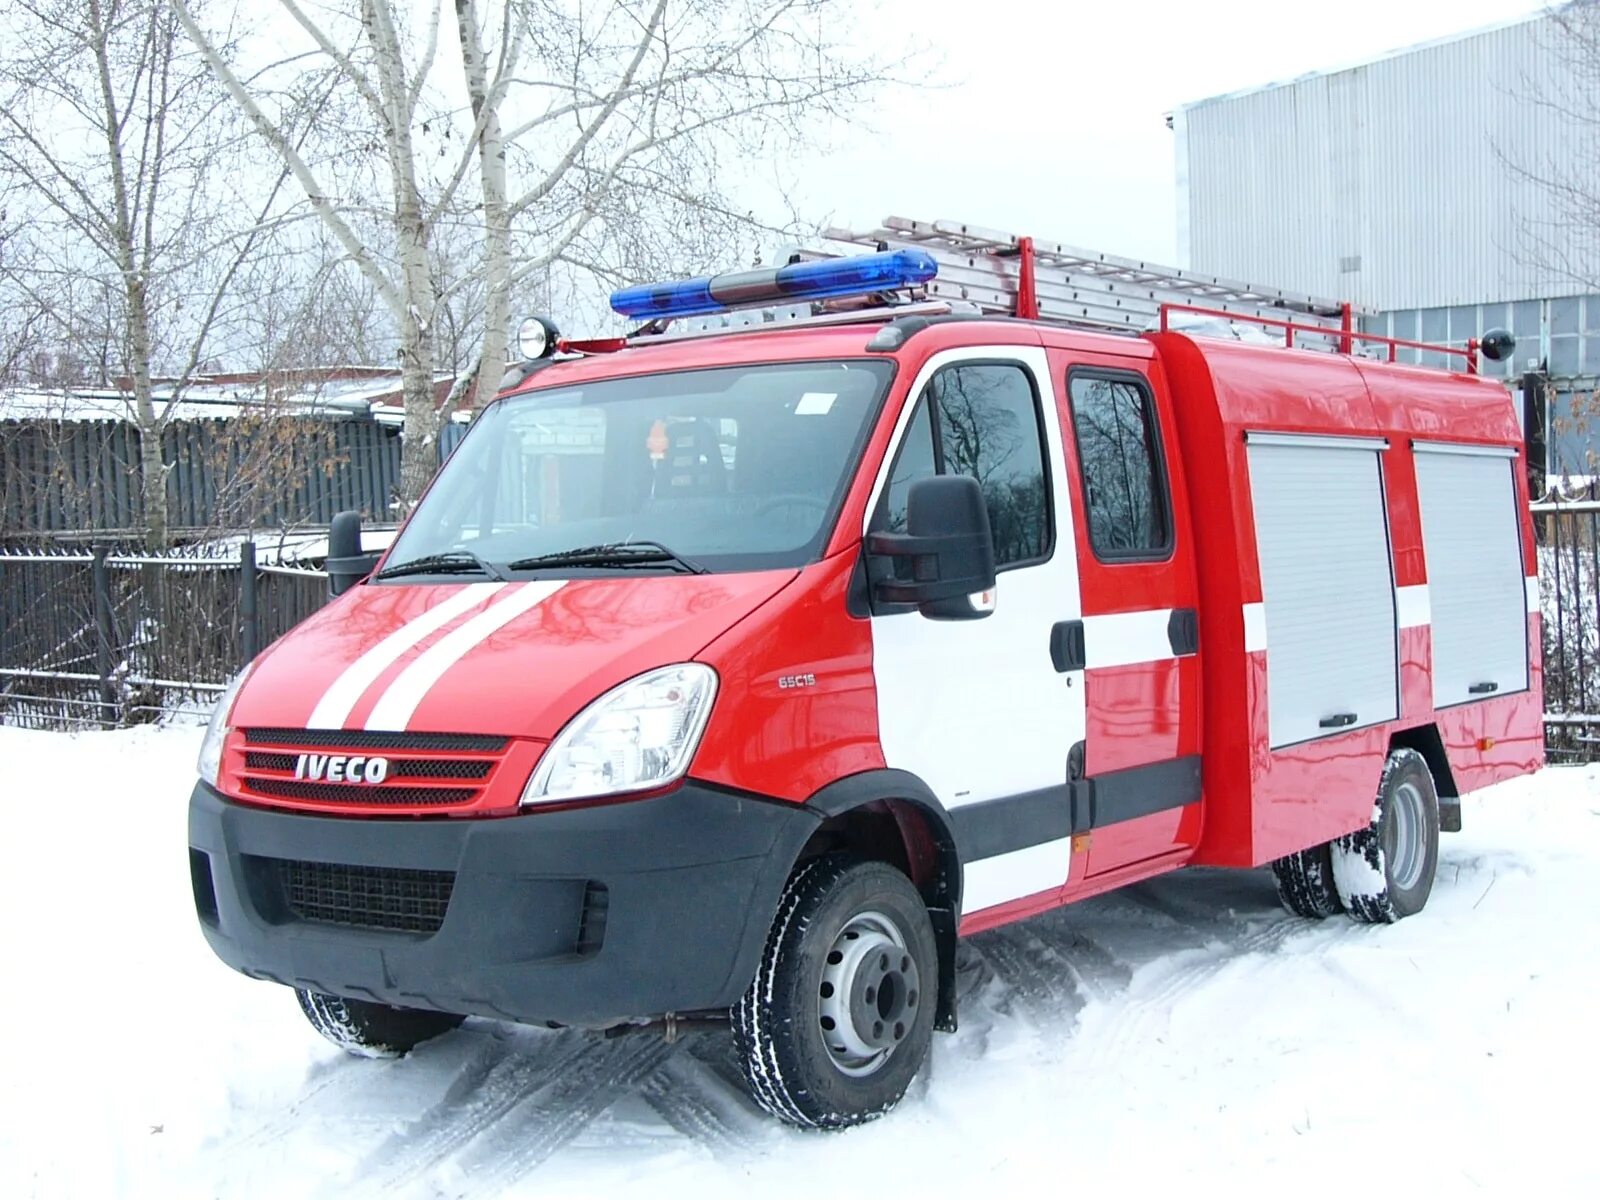 Скорая пожарная. ГАЗ 22172. Специальные автомобили. Пожарные машины специального назначения. Пожарная скорая полиция.